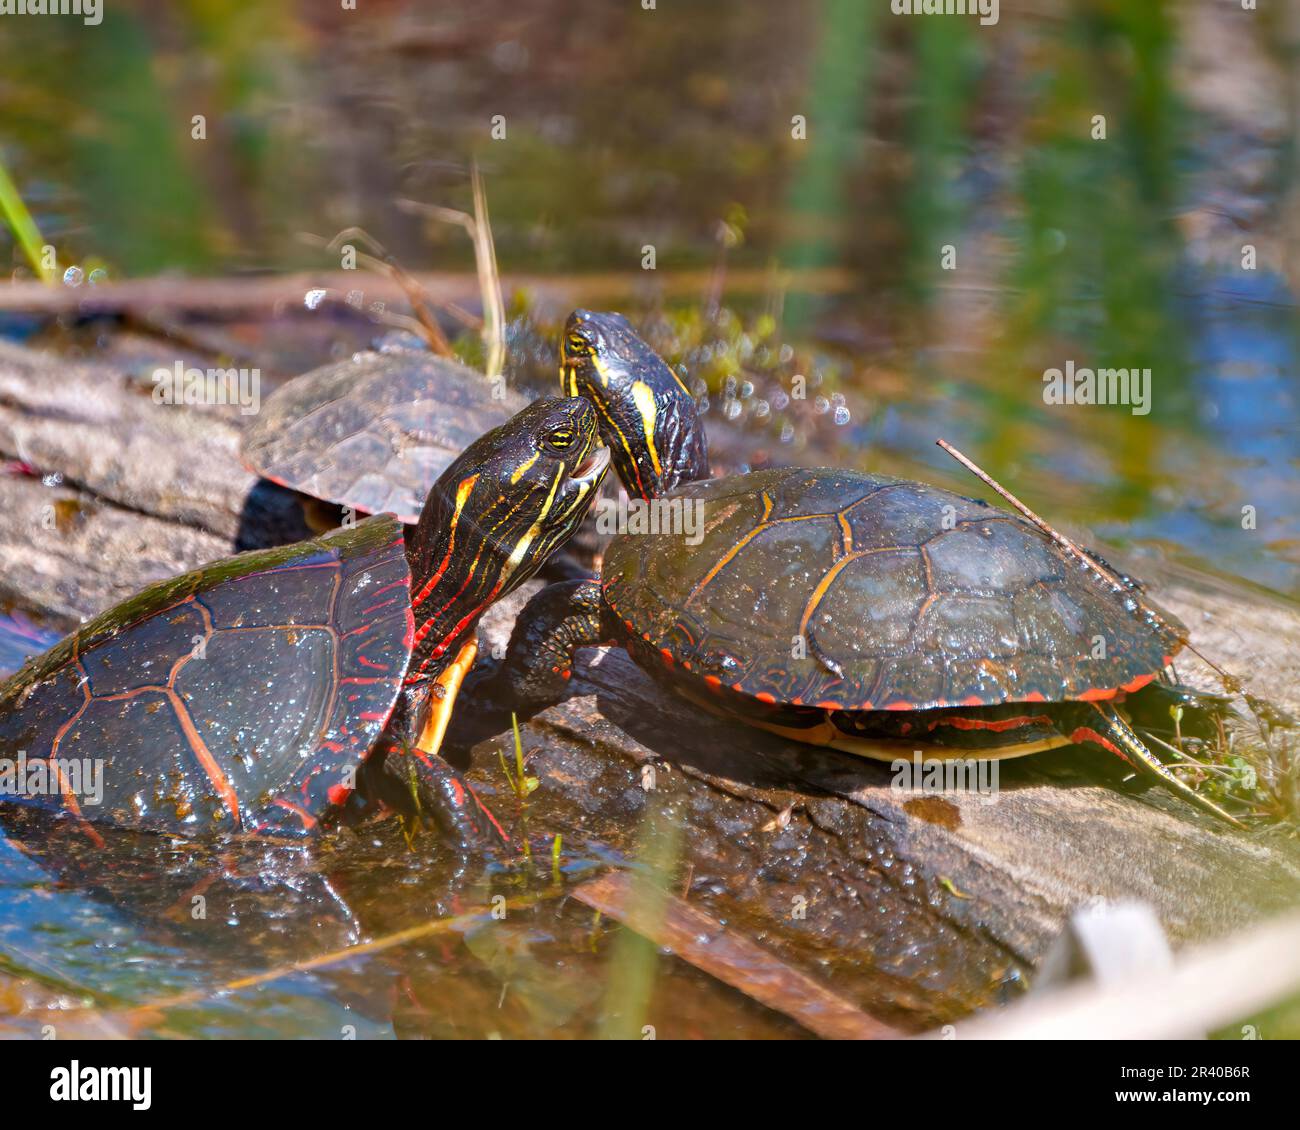 Ein Paar bemalter Schildkröten während der Paarungszeit interagiert auf einem Baumstamm mit verschwommenem Wasserhintergrund in ihrer Umgebung und ihrem Lebensraum. Schildkrötenfoto Stockfoto